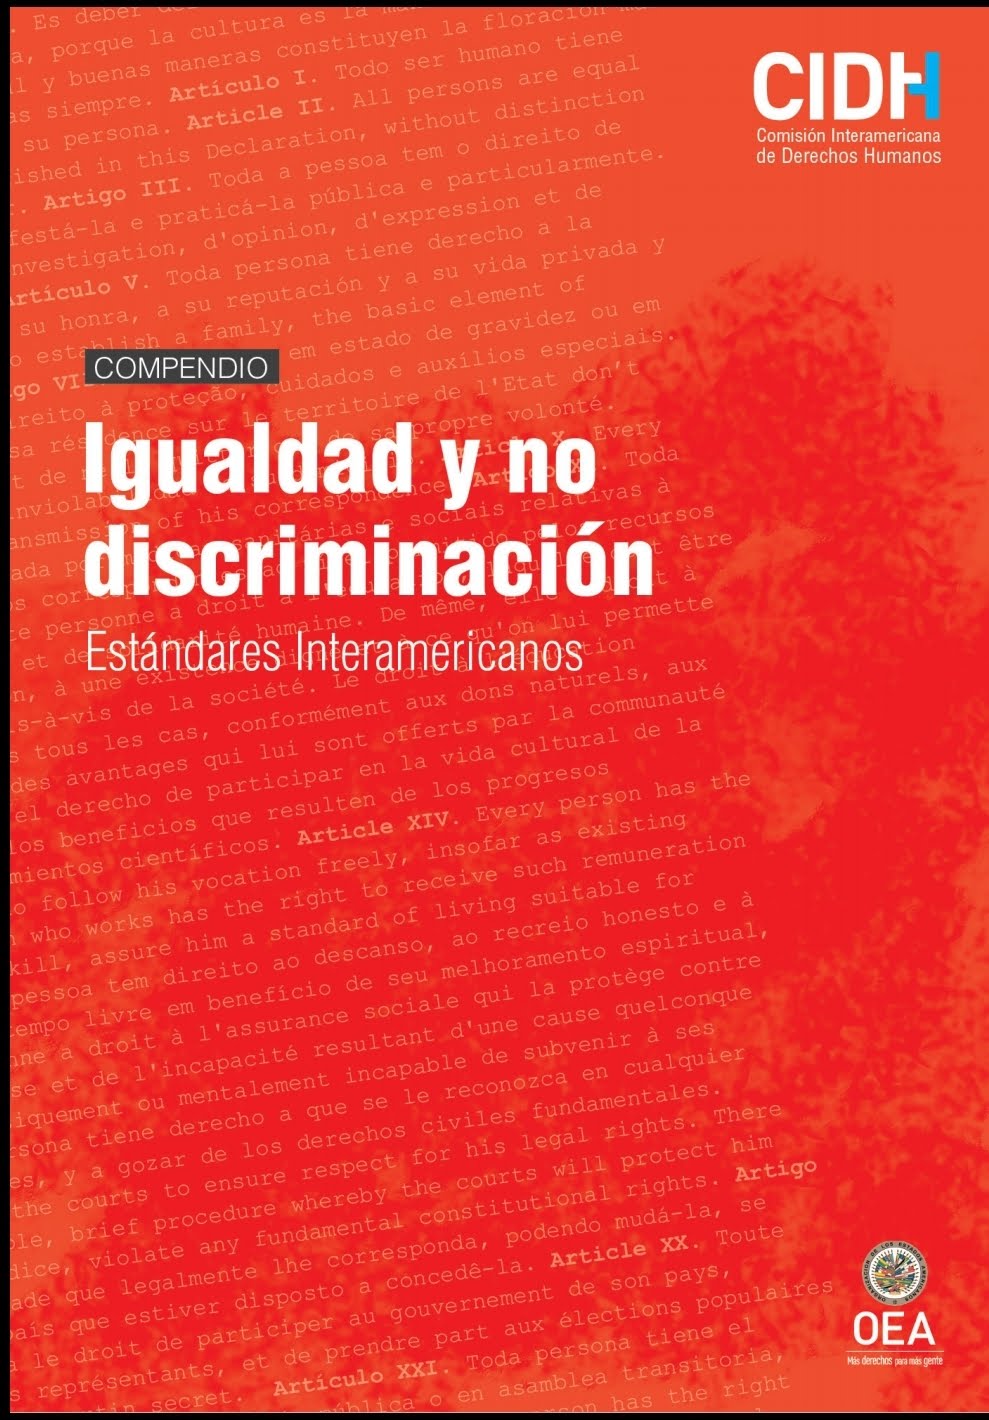 CIDH Compendio sobre la igualdad y no  discriminación.